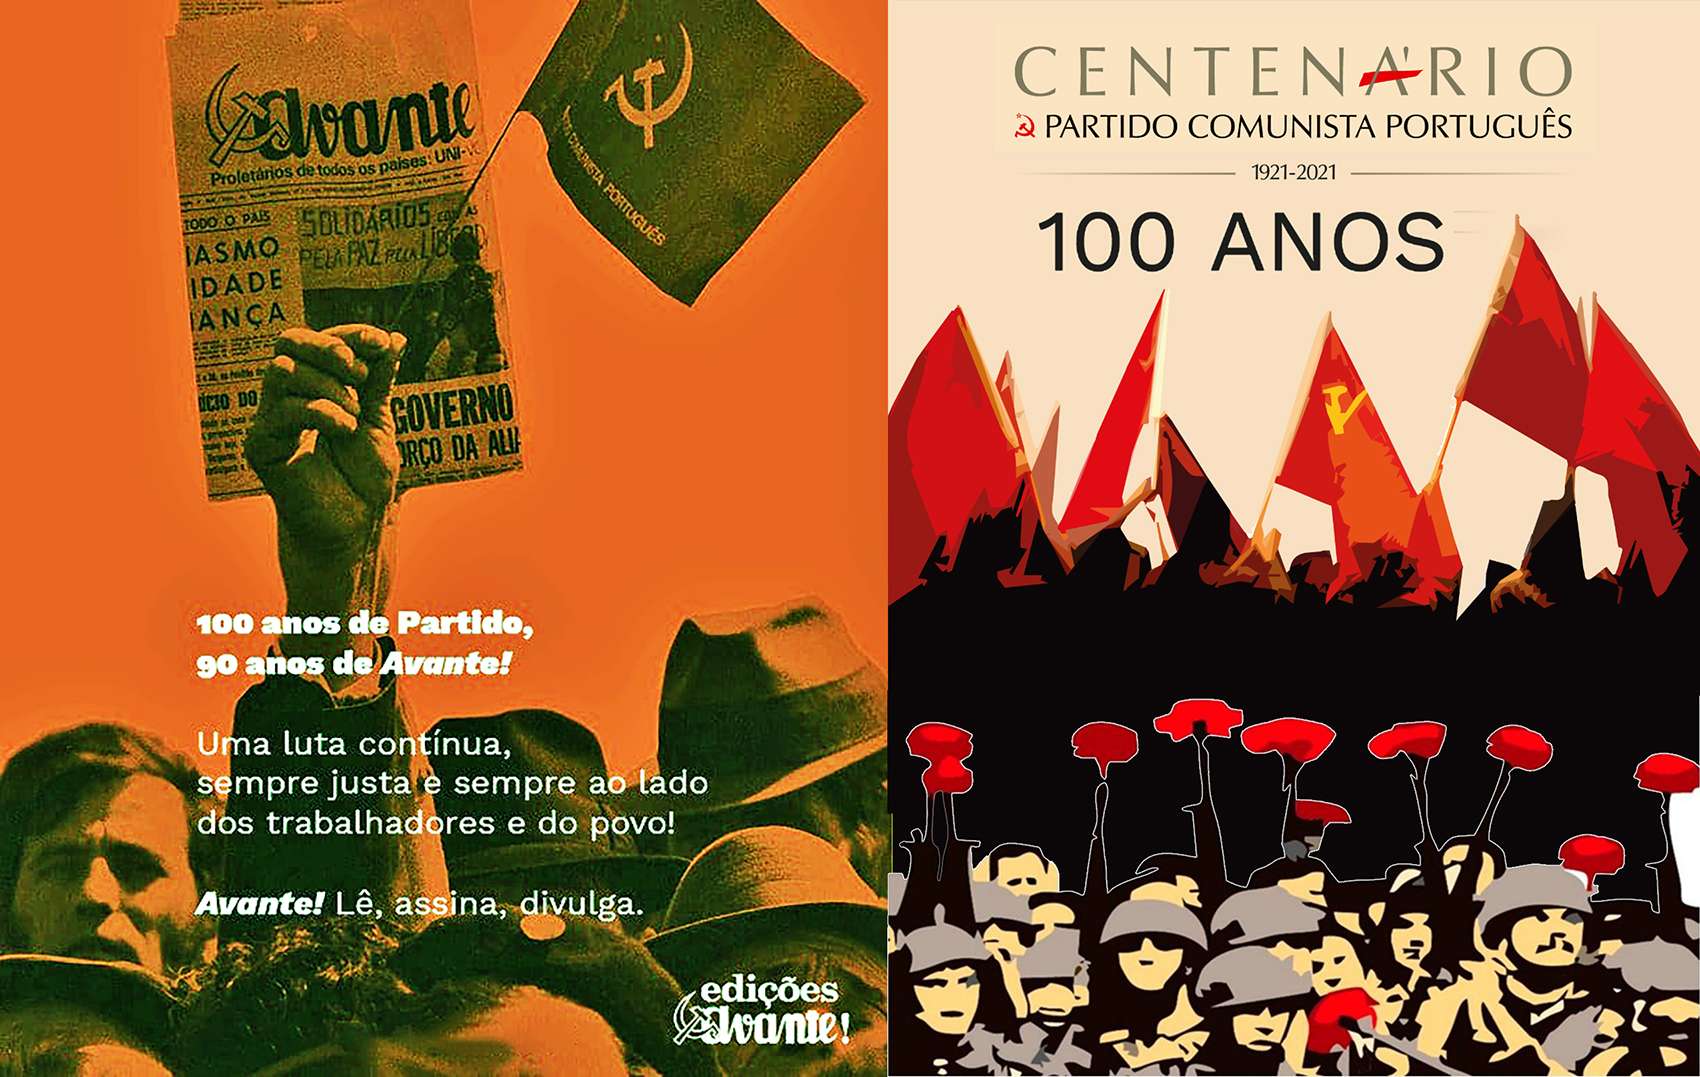 Centenário do Partido Comunista Português